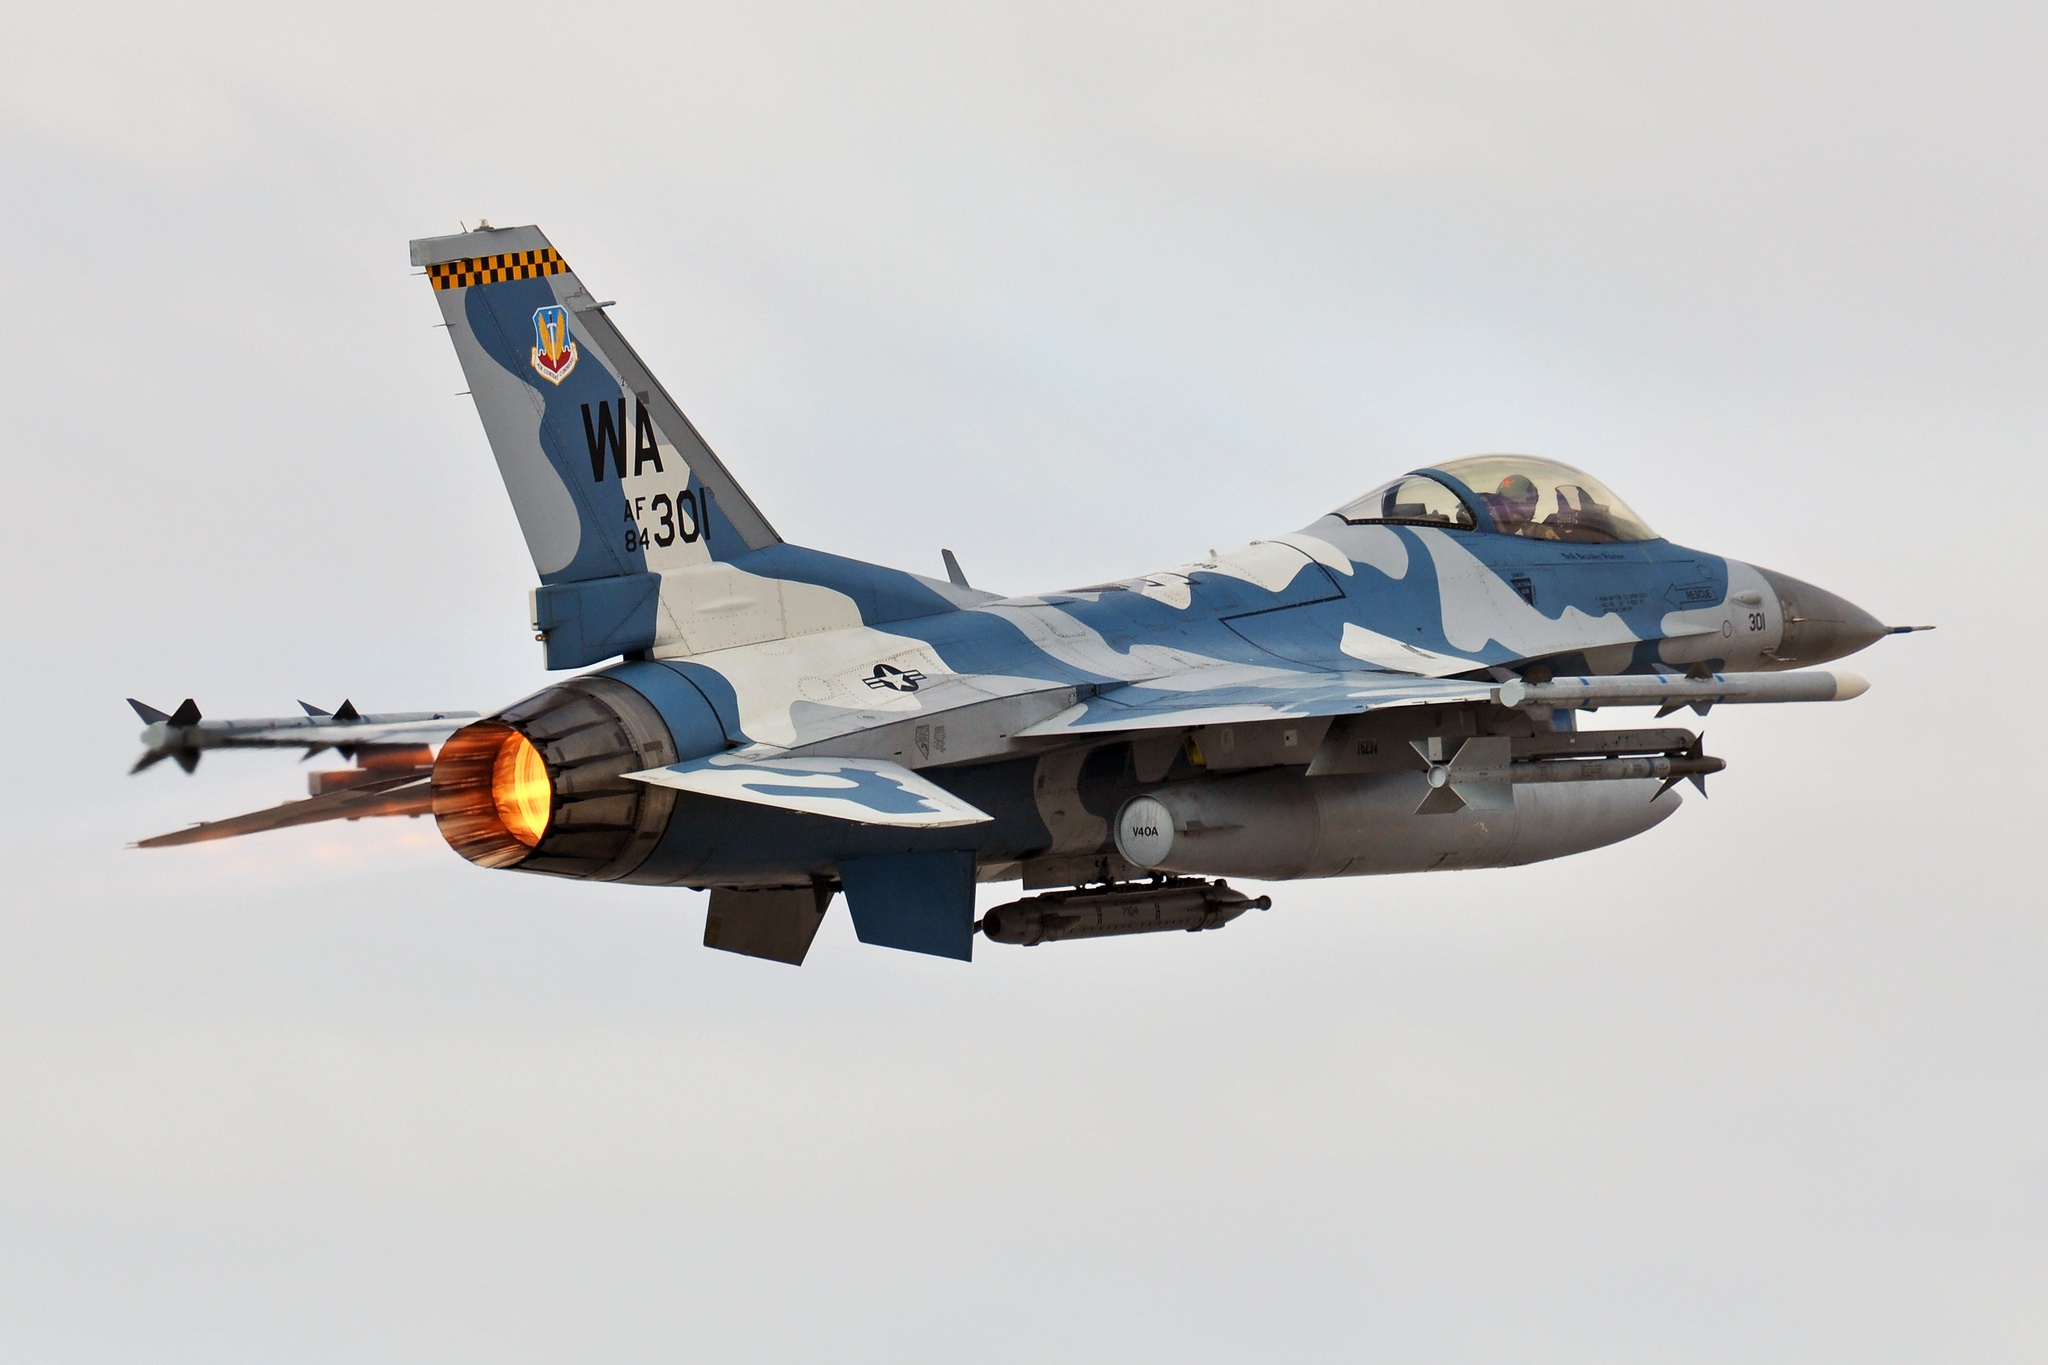 Aircraft General Dynamics F 16 Fighting Falcon Jet Fighter Warplane 2048x1365